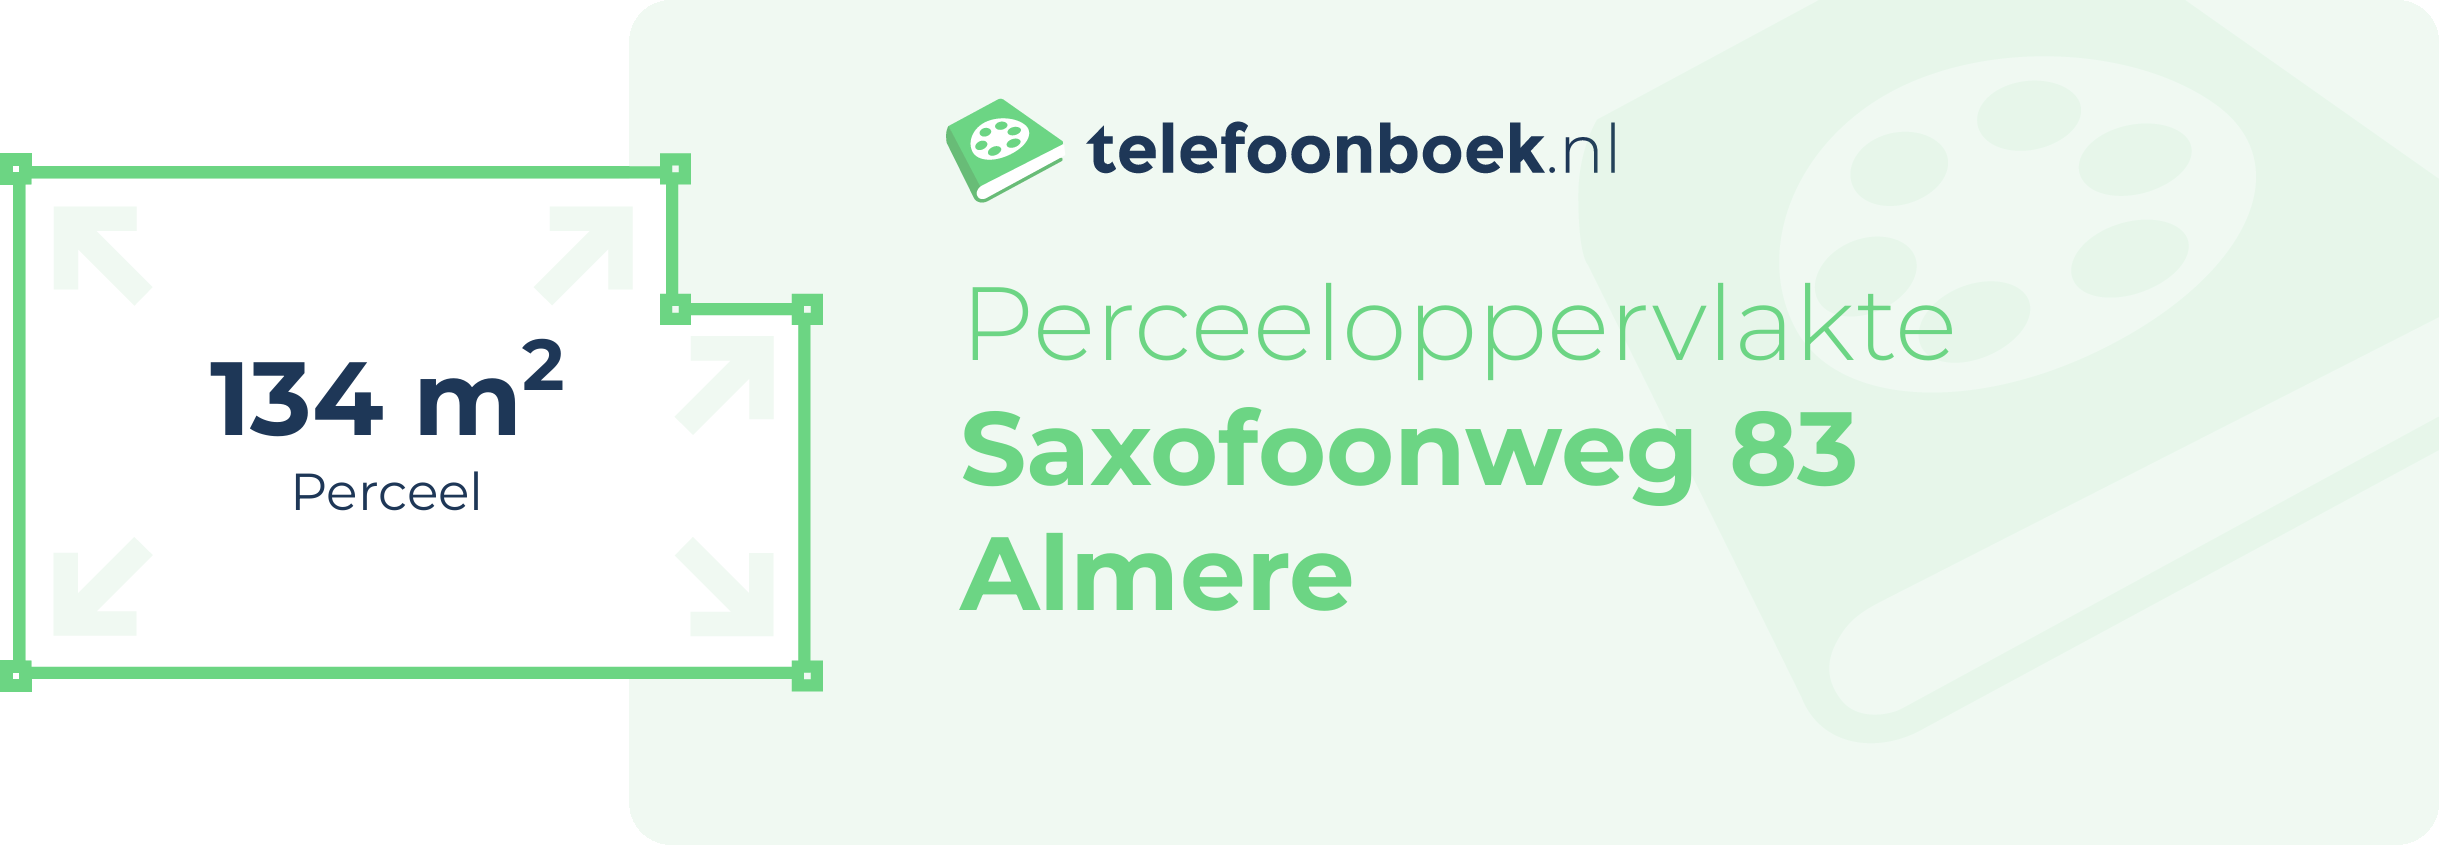 Perceeloppervlakte Saxofoonweg 83 Almere